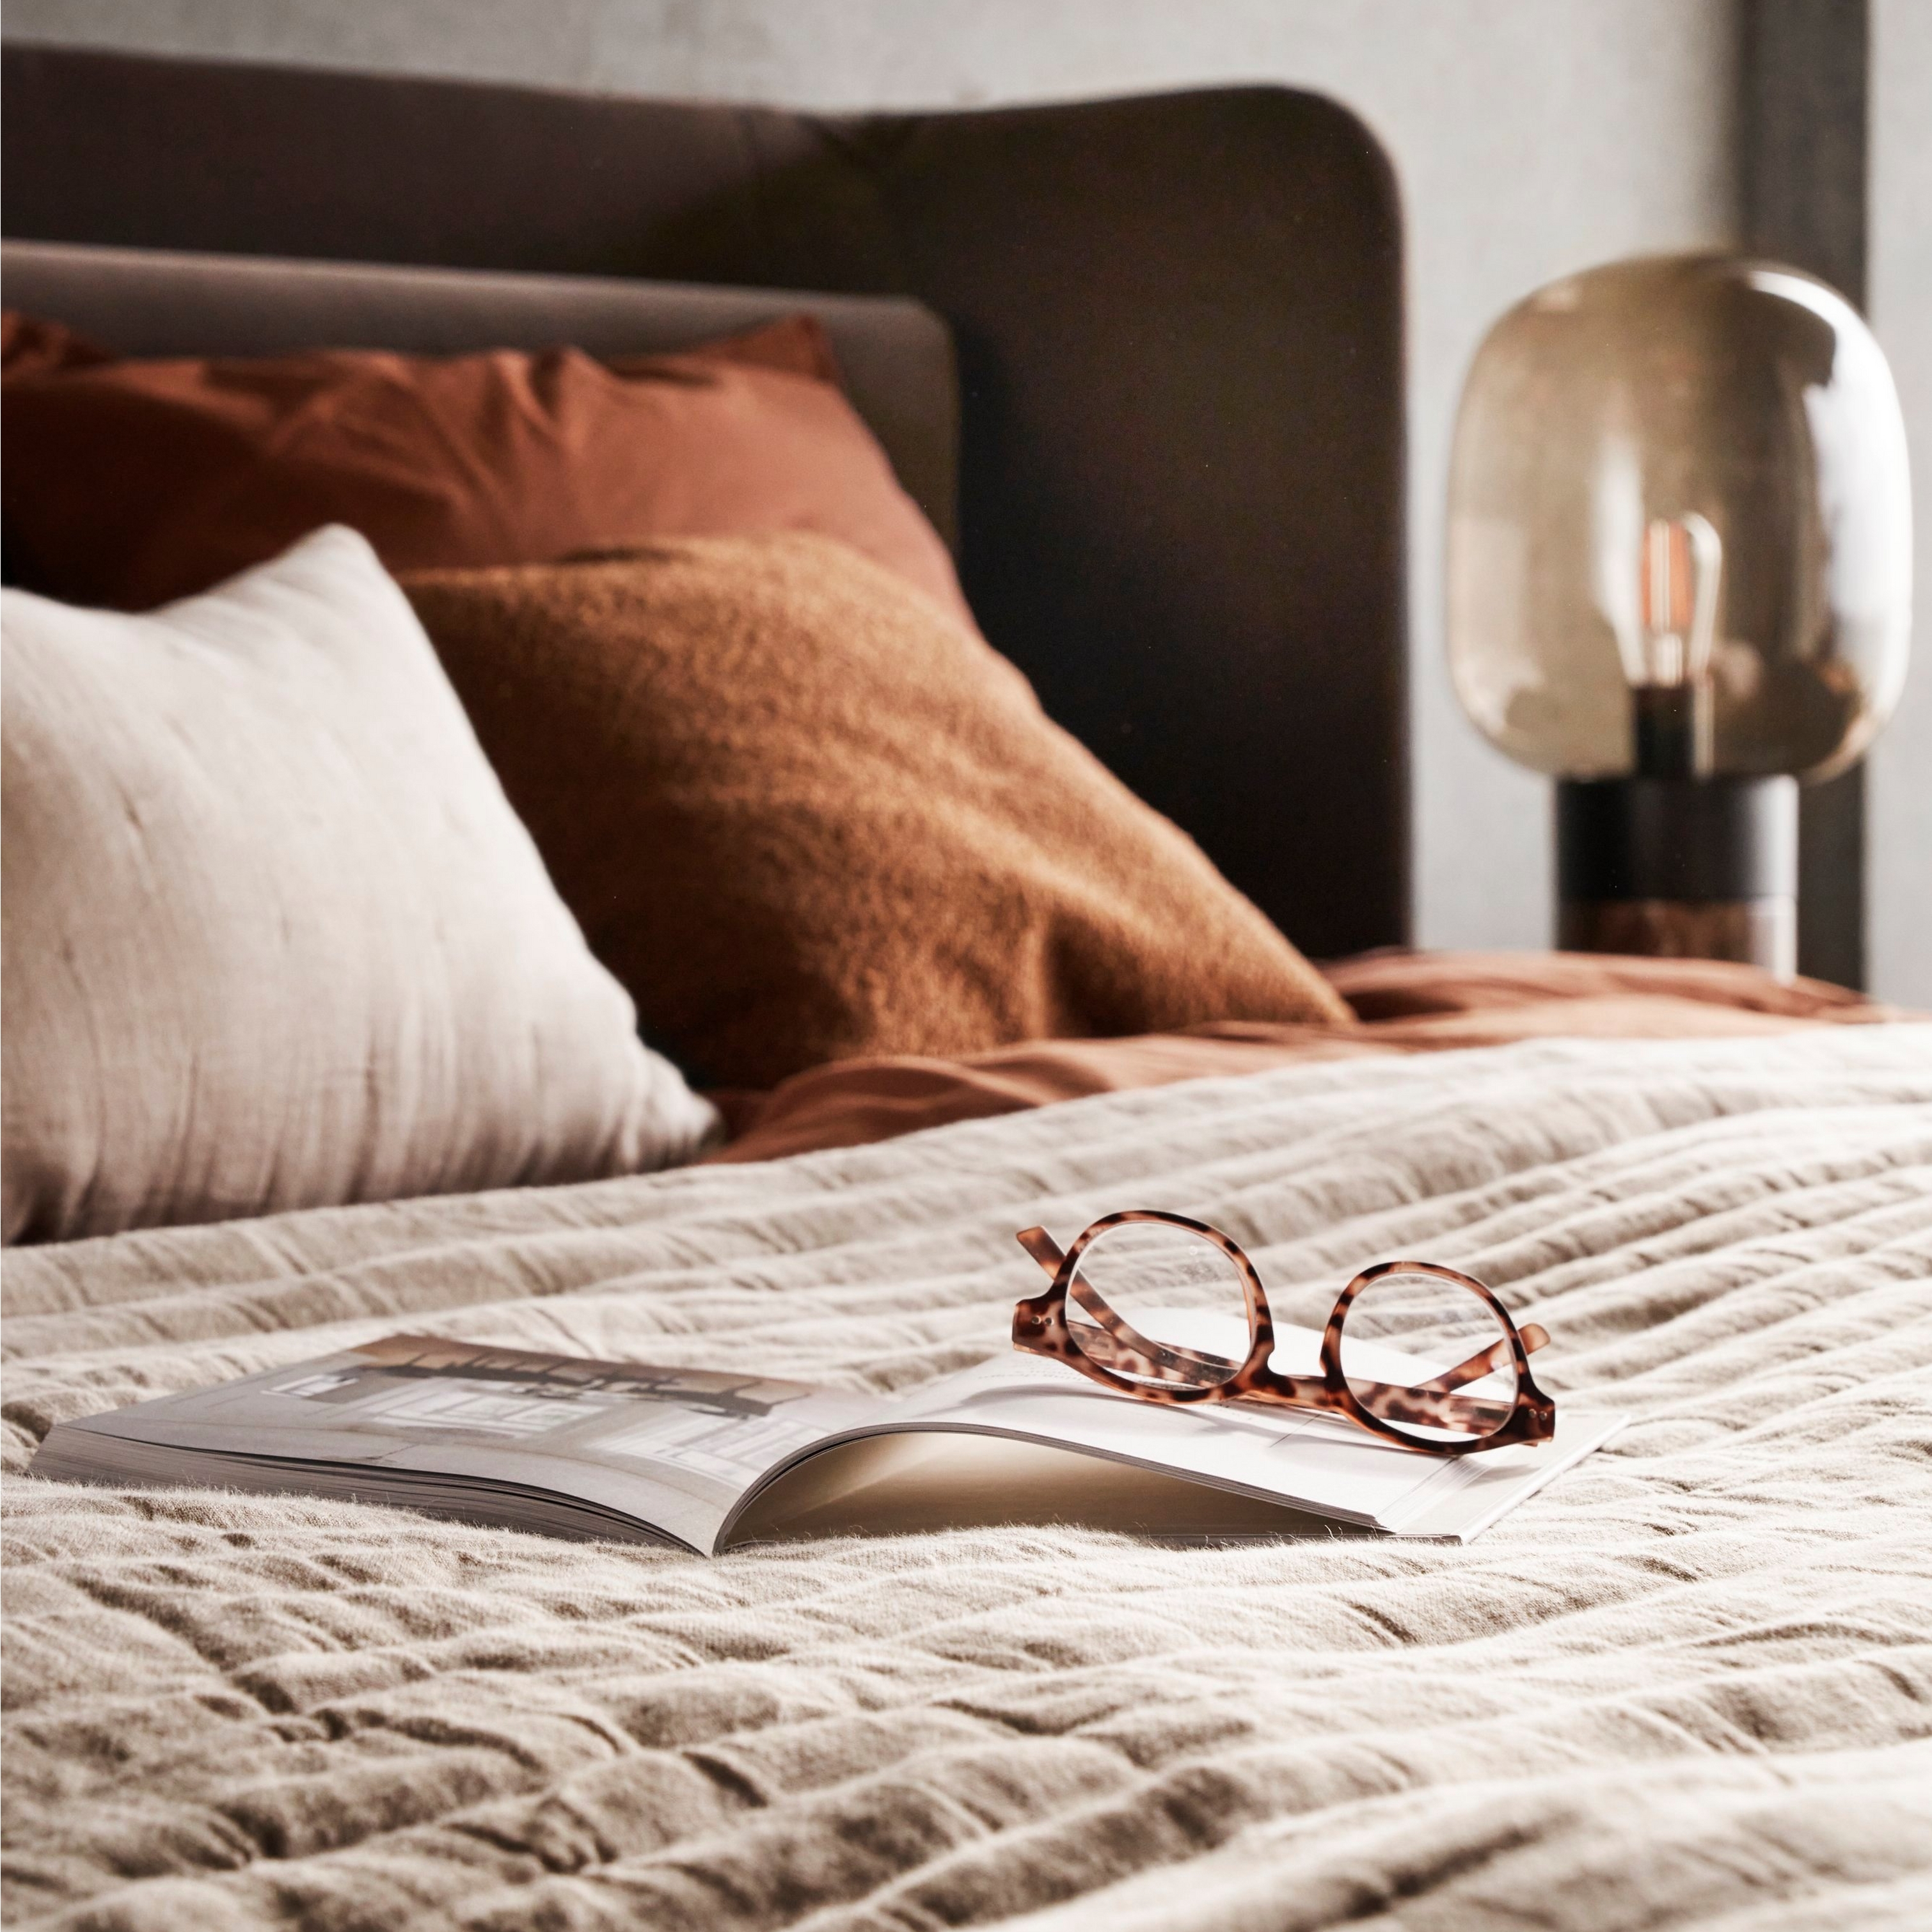 Säng med strukturerat linne, glasögon på en öppen bok och mjuk sängbelysning.